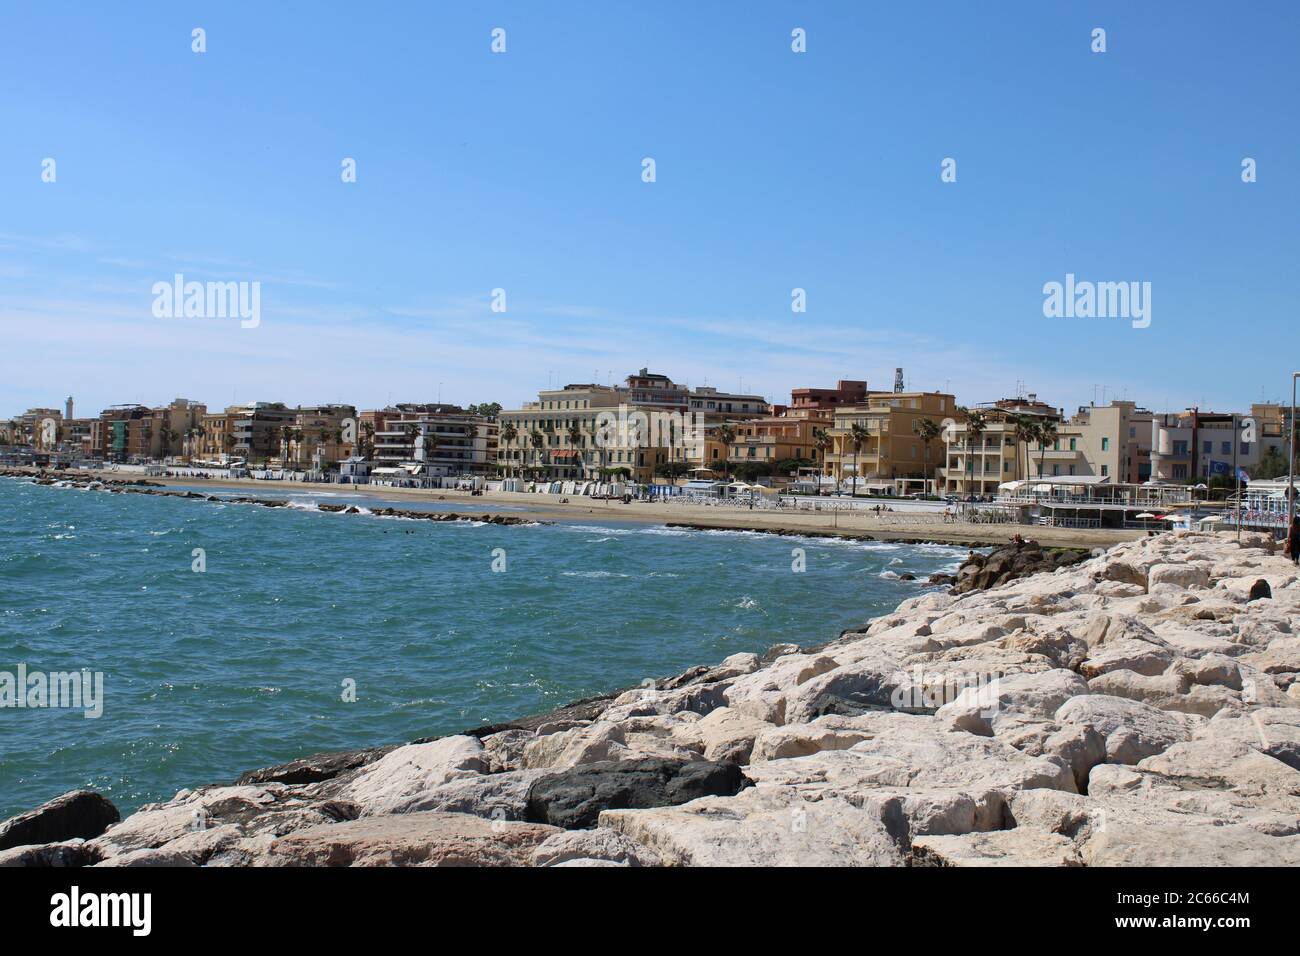 buildings on beach beautiful coastal city of anzio near rome italy Stock Photo